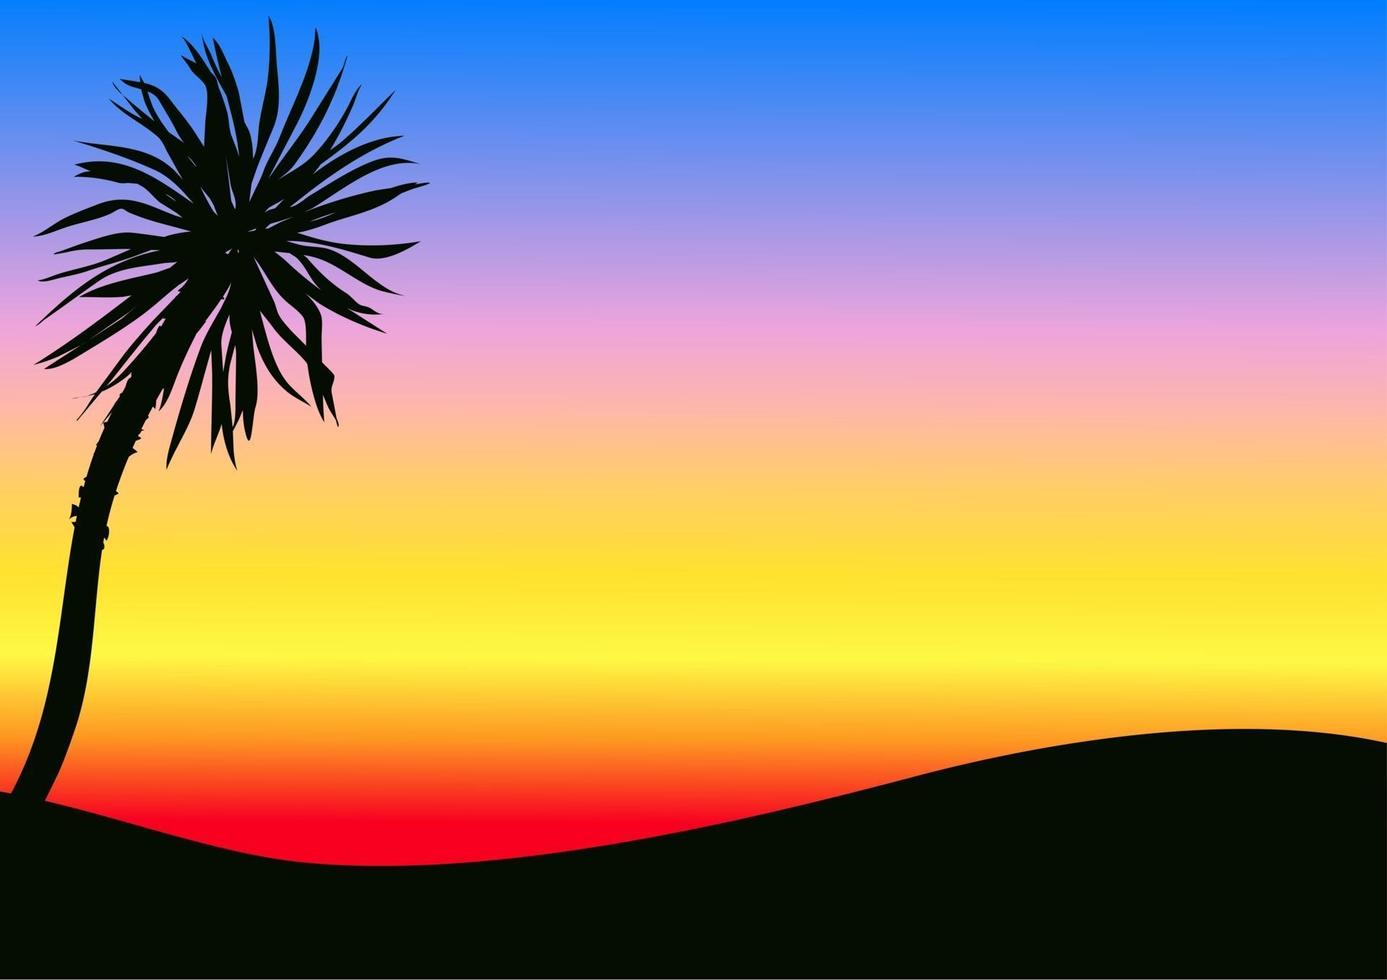 Tropical Rainbow Sunset Backdrop vector